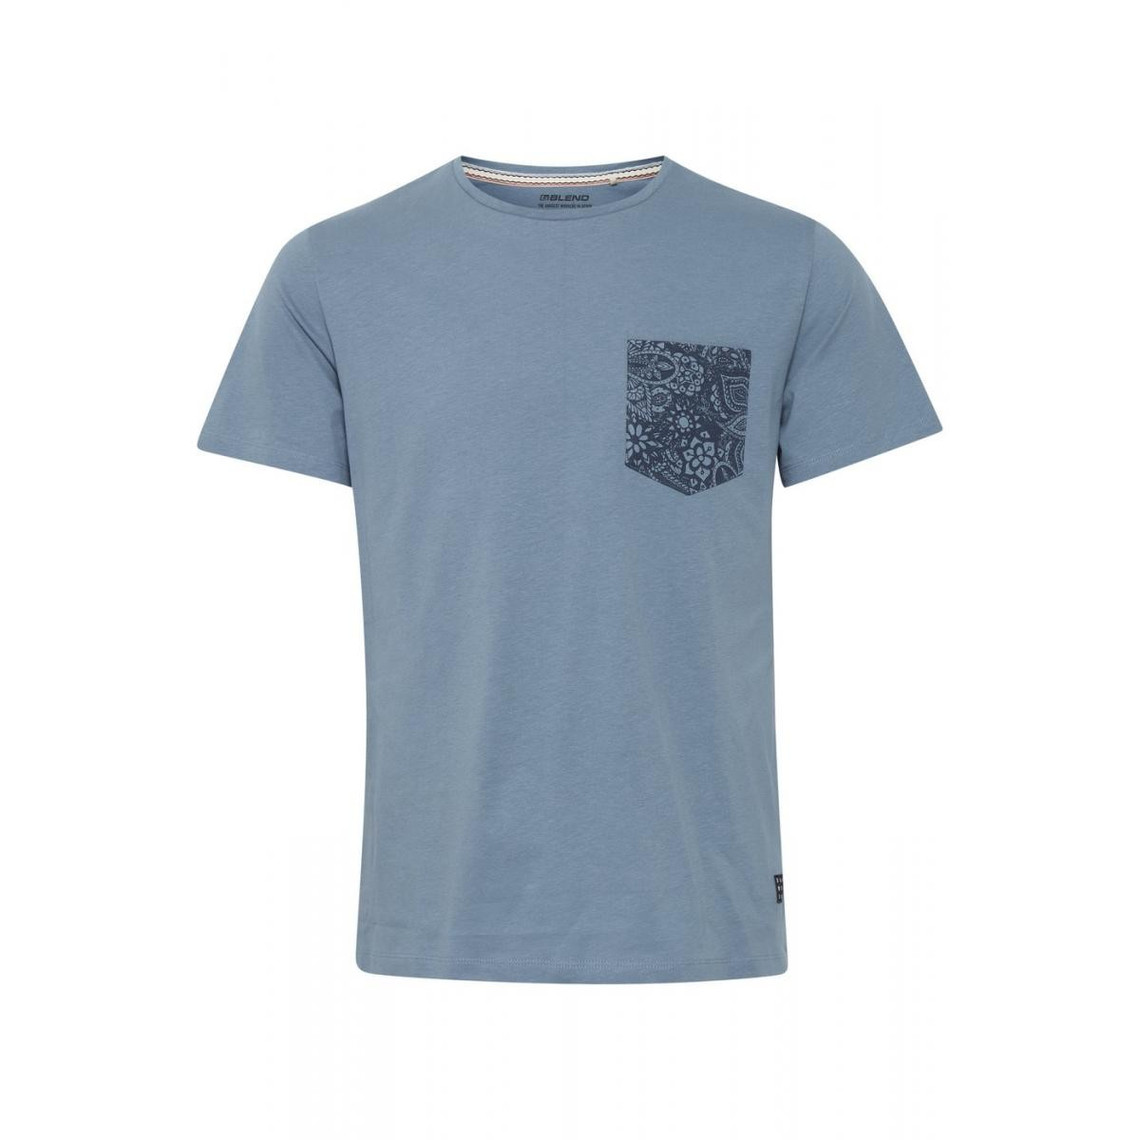 Tee Shirt avec Poche Imprimée Florale - Bleu